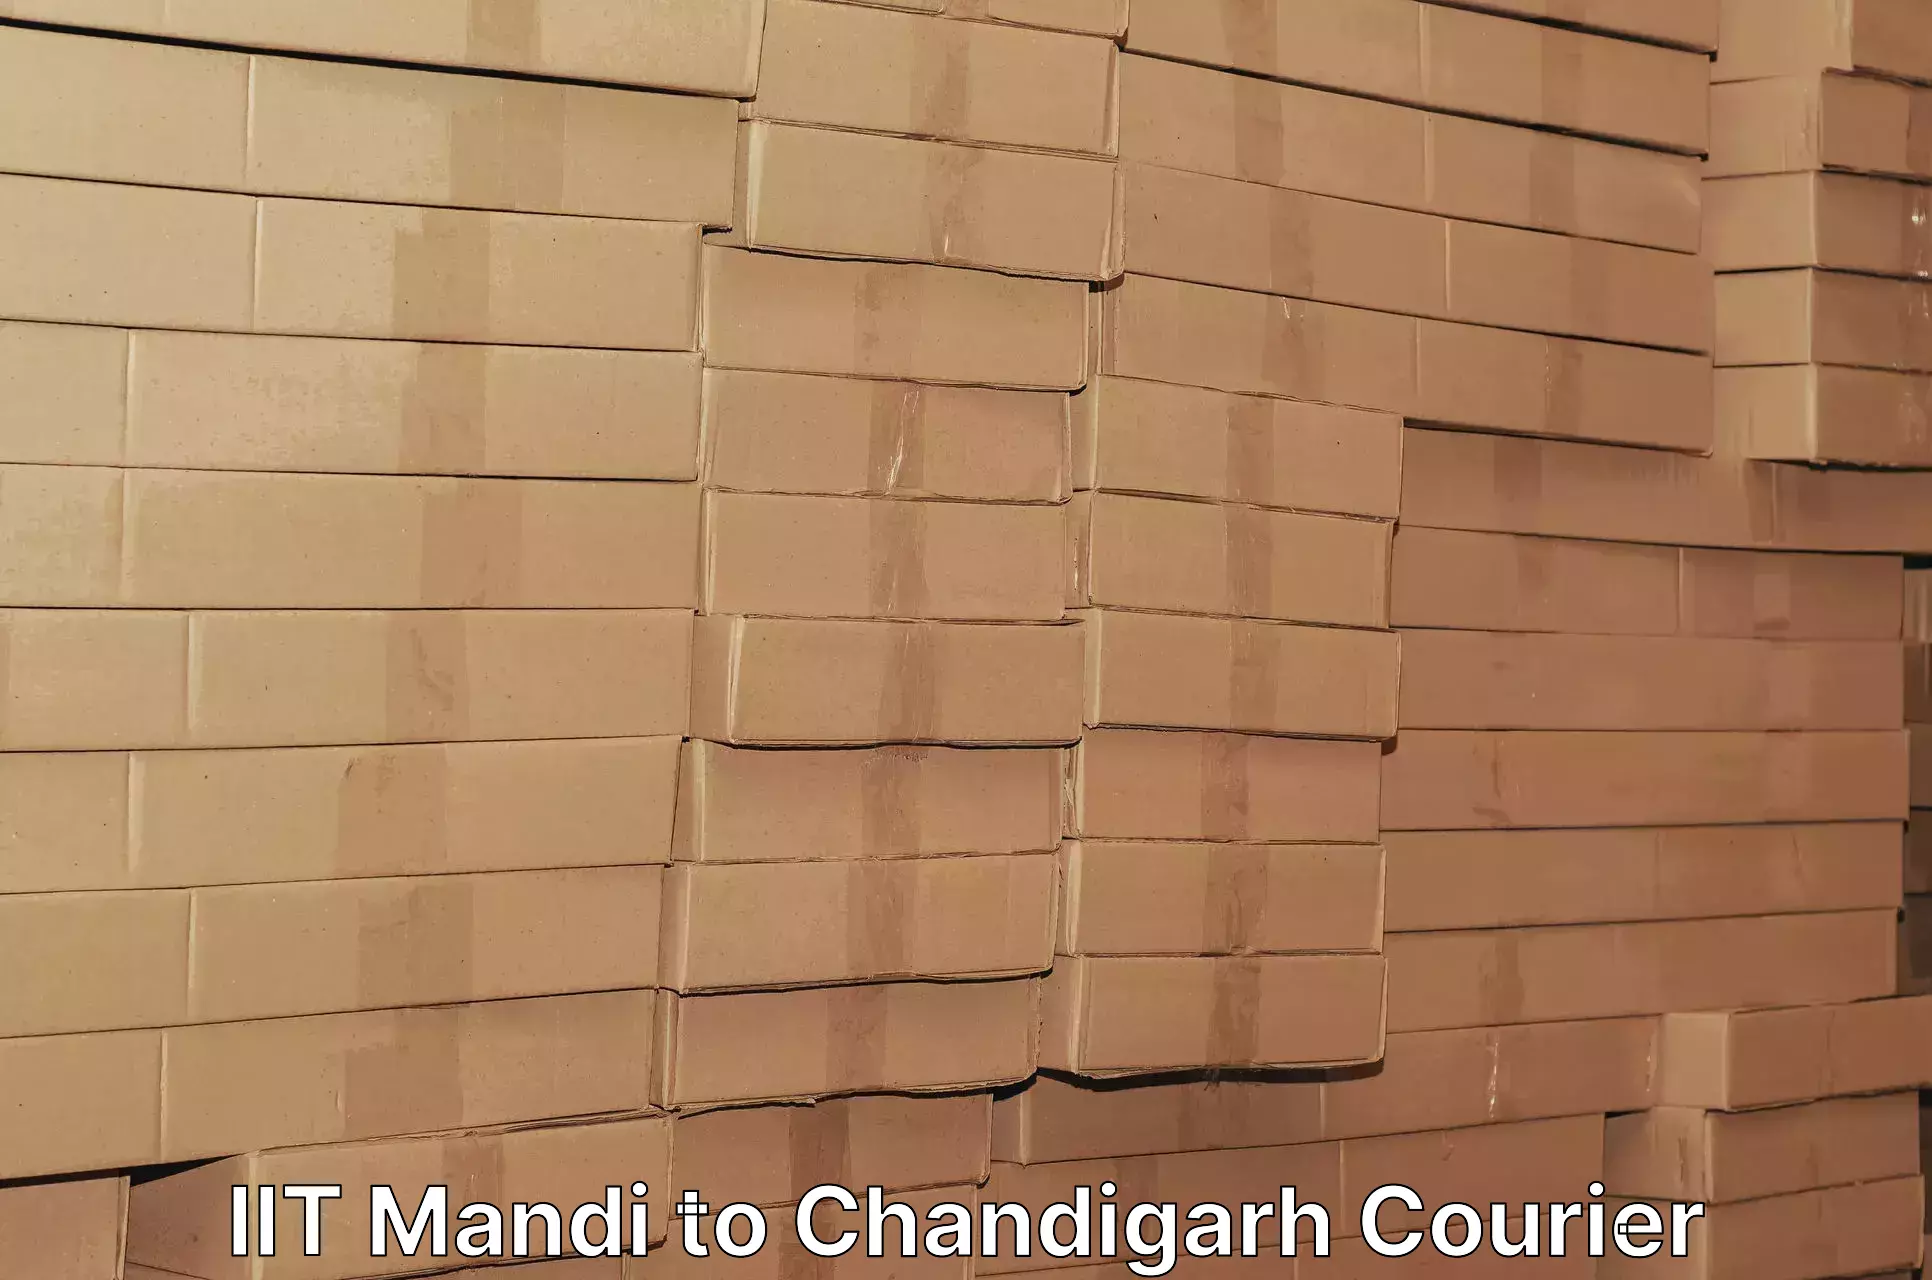 Express logistics service IIT Mandi to Panjab University Chandigarh